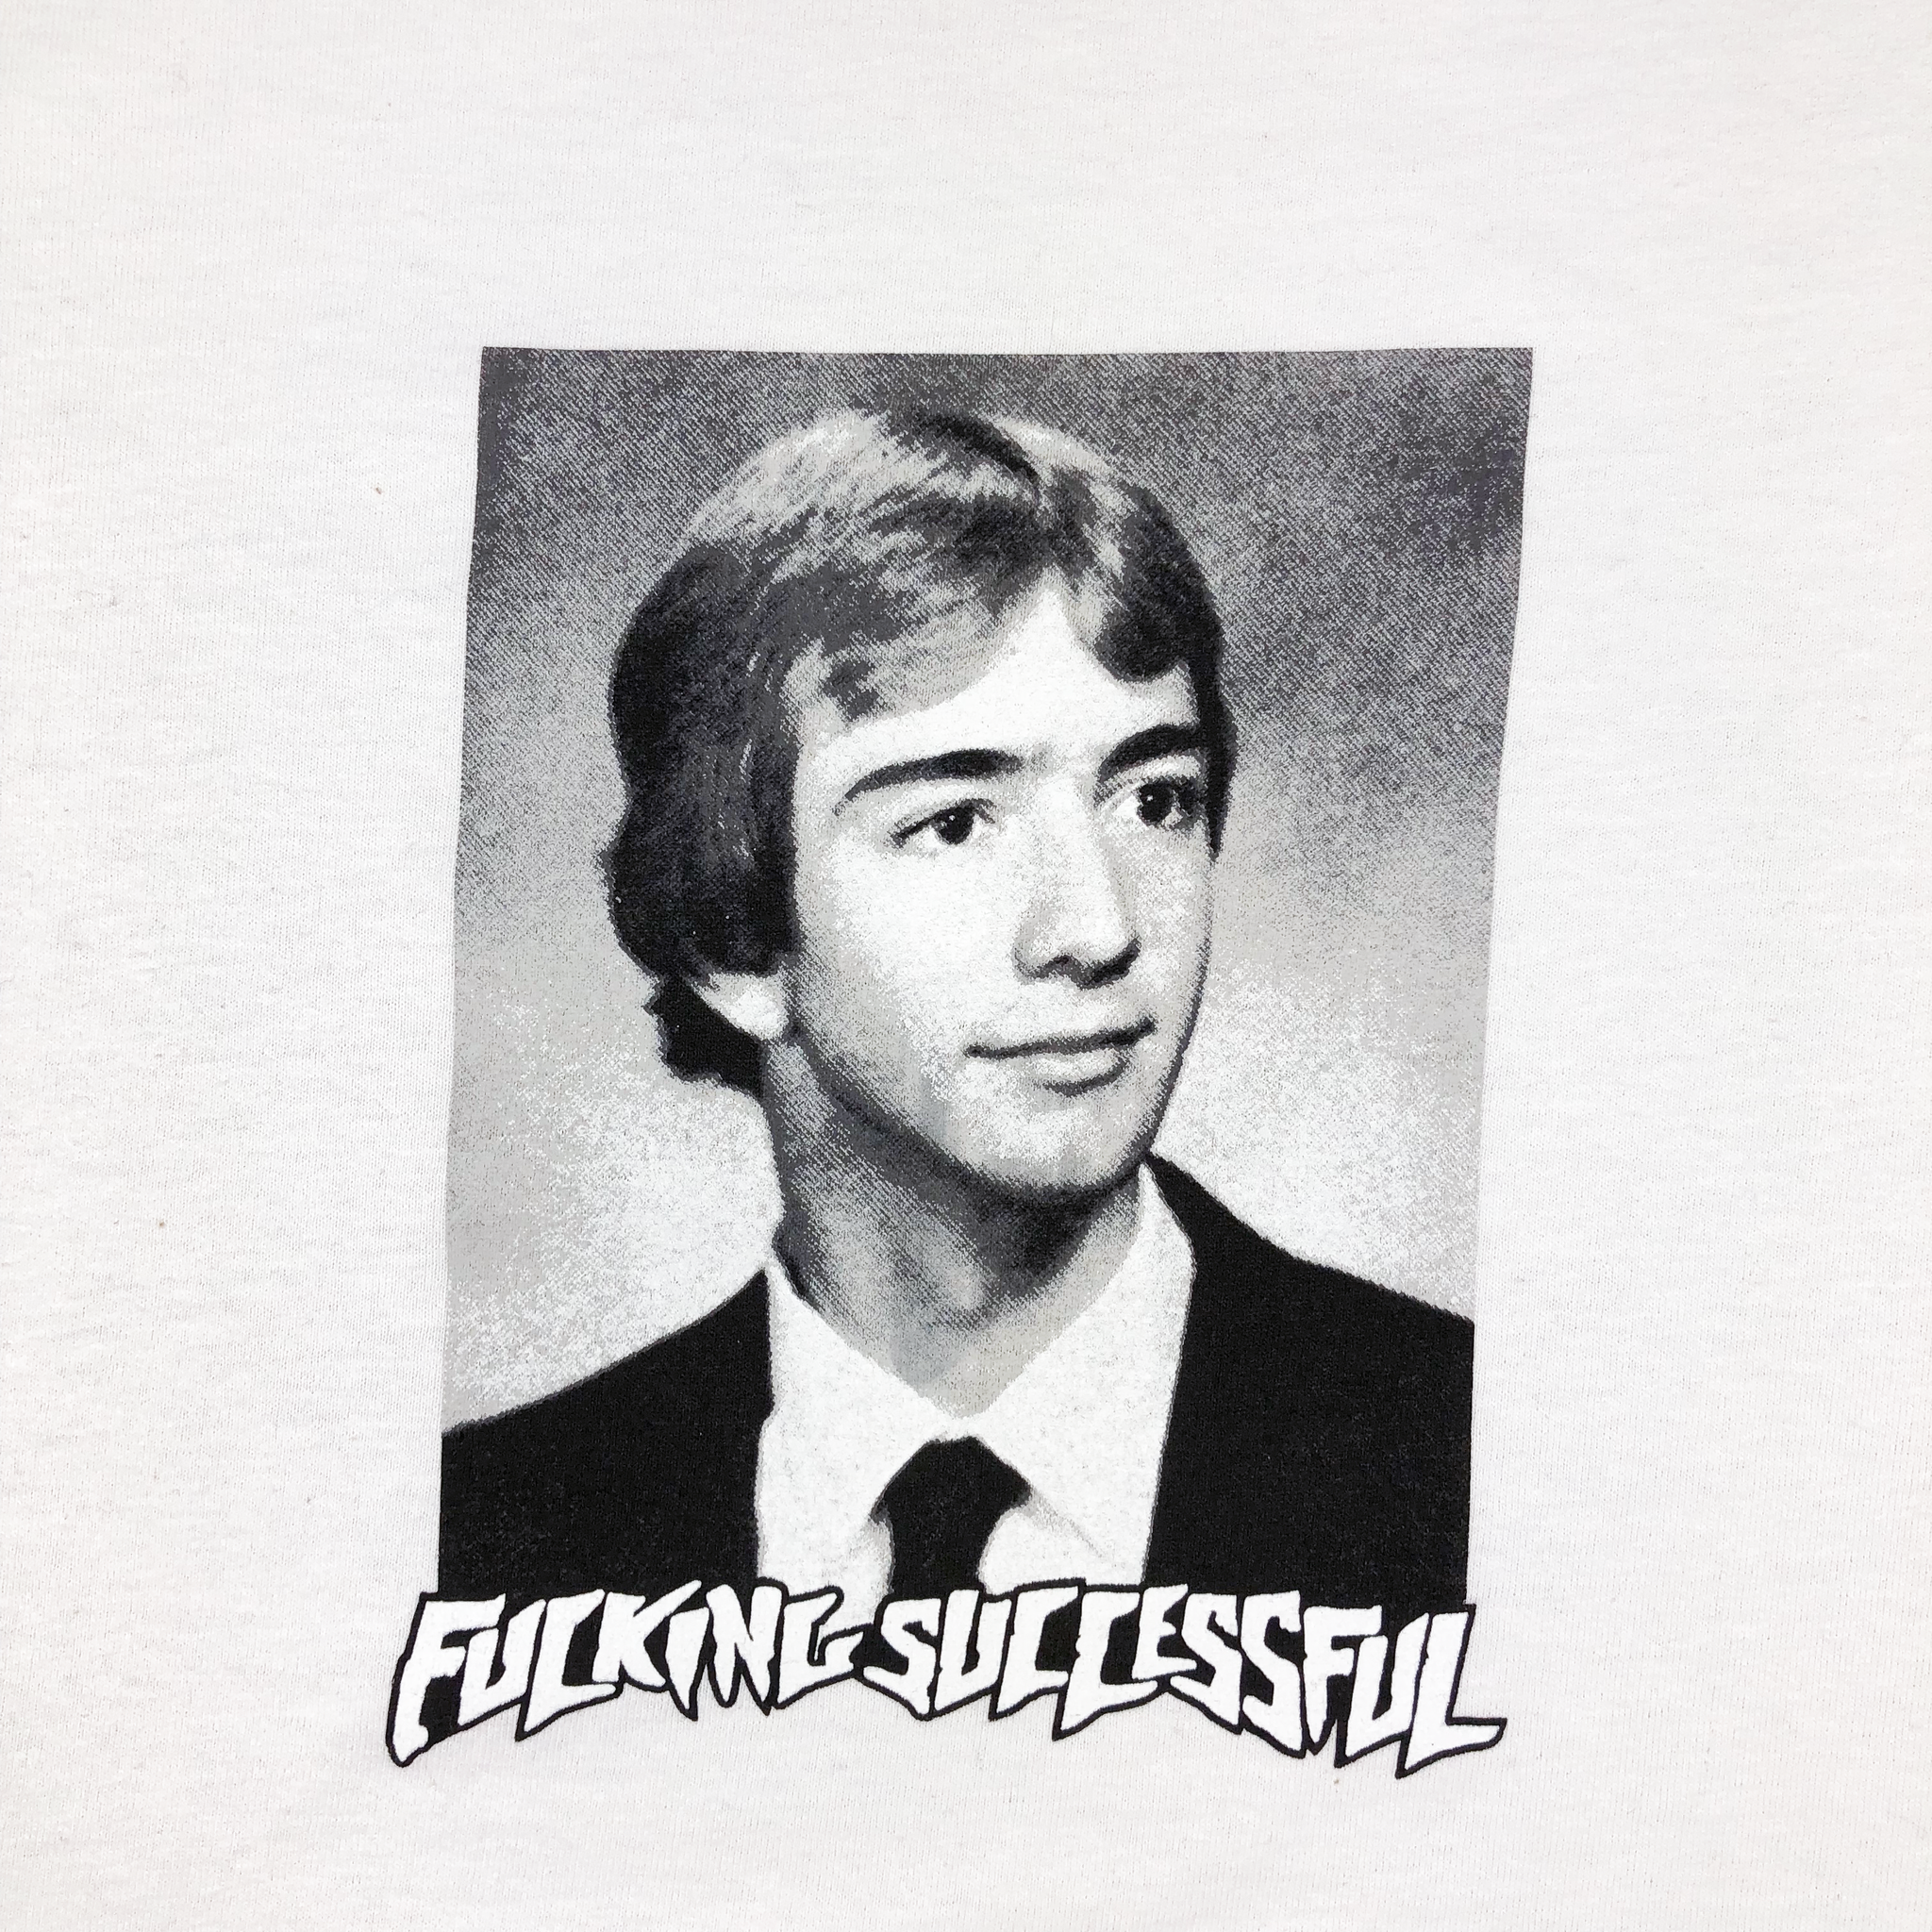 Jeff "Fucking Successful" Bezos T-Shirt